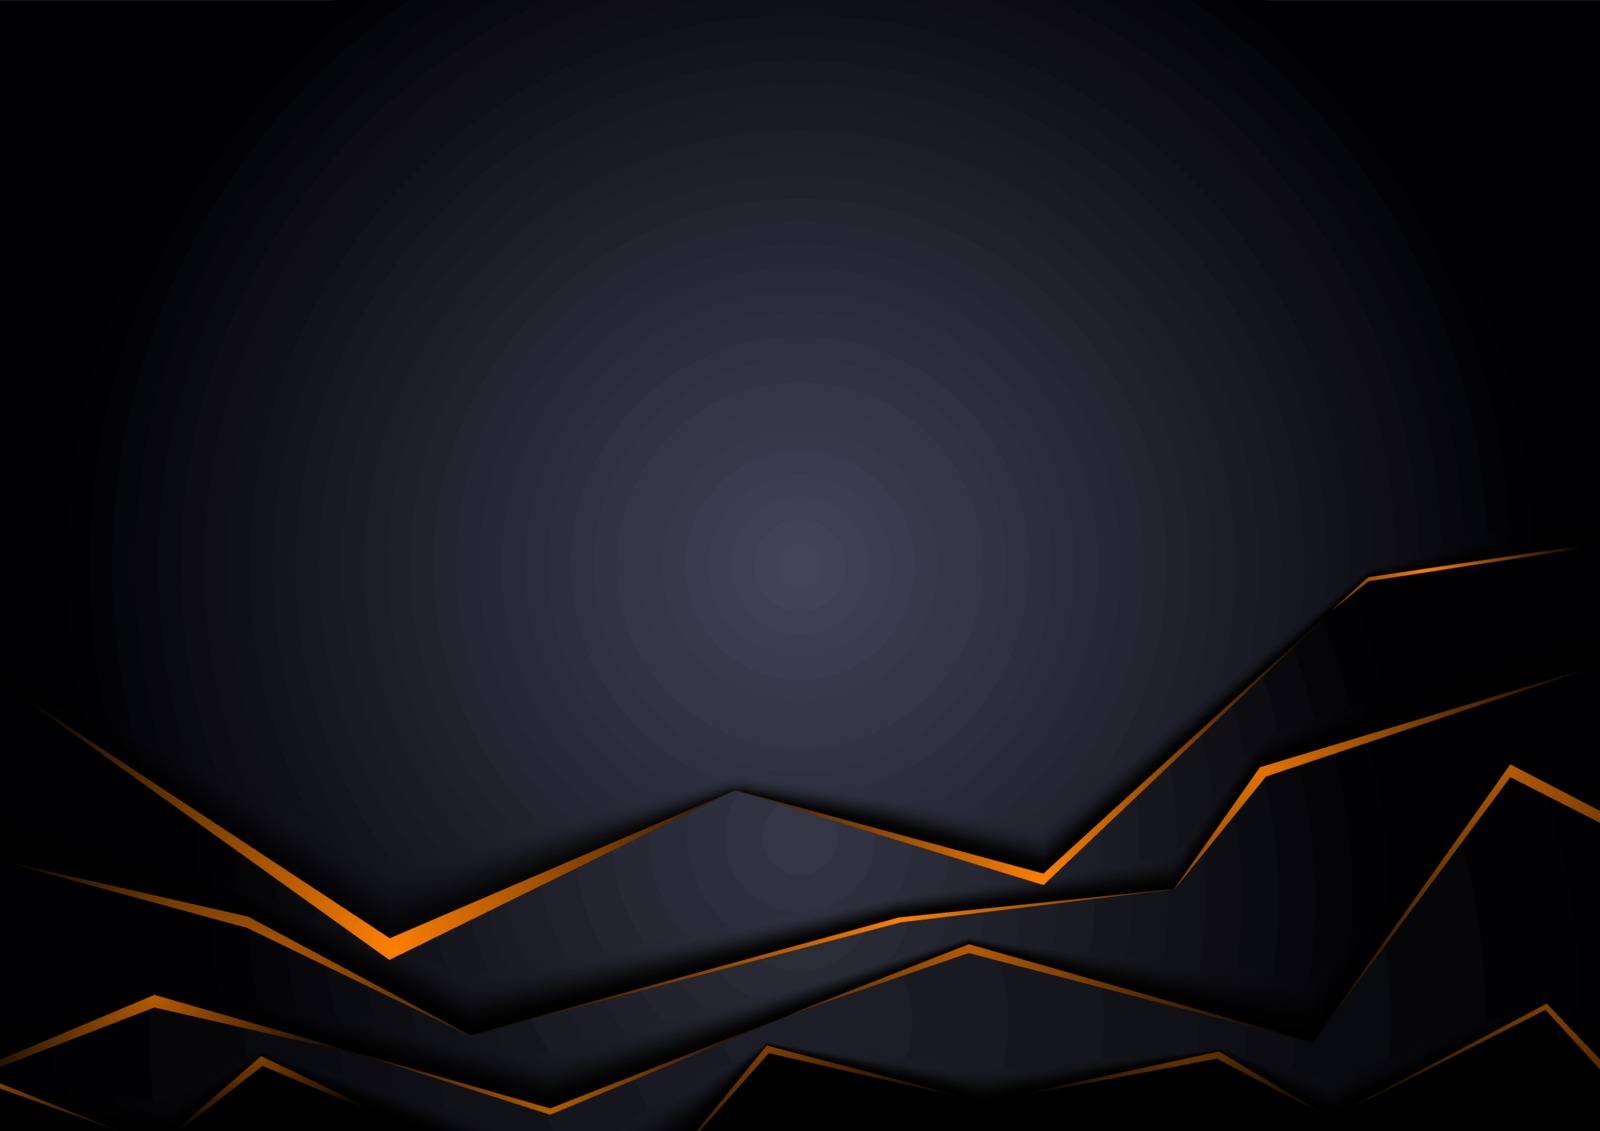 Black Background with Orange Edges by illustratorCZ